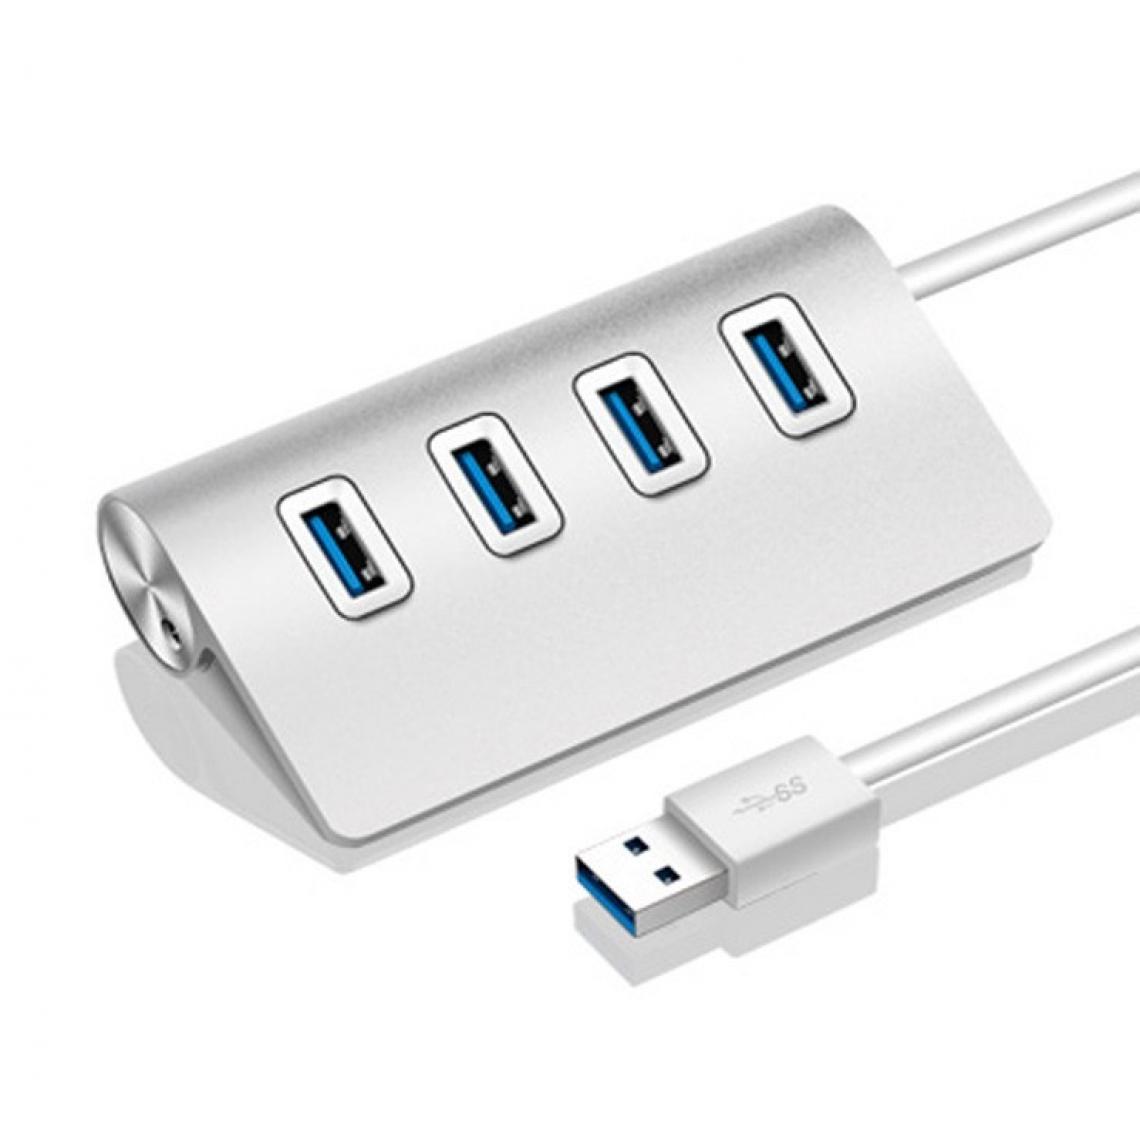 Shot - Hub Metal 4 ports USB 2.0 pour PC ORDISSIMO Multi-prises Adaptateur Rallonge (ARGENT) - Hub